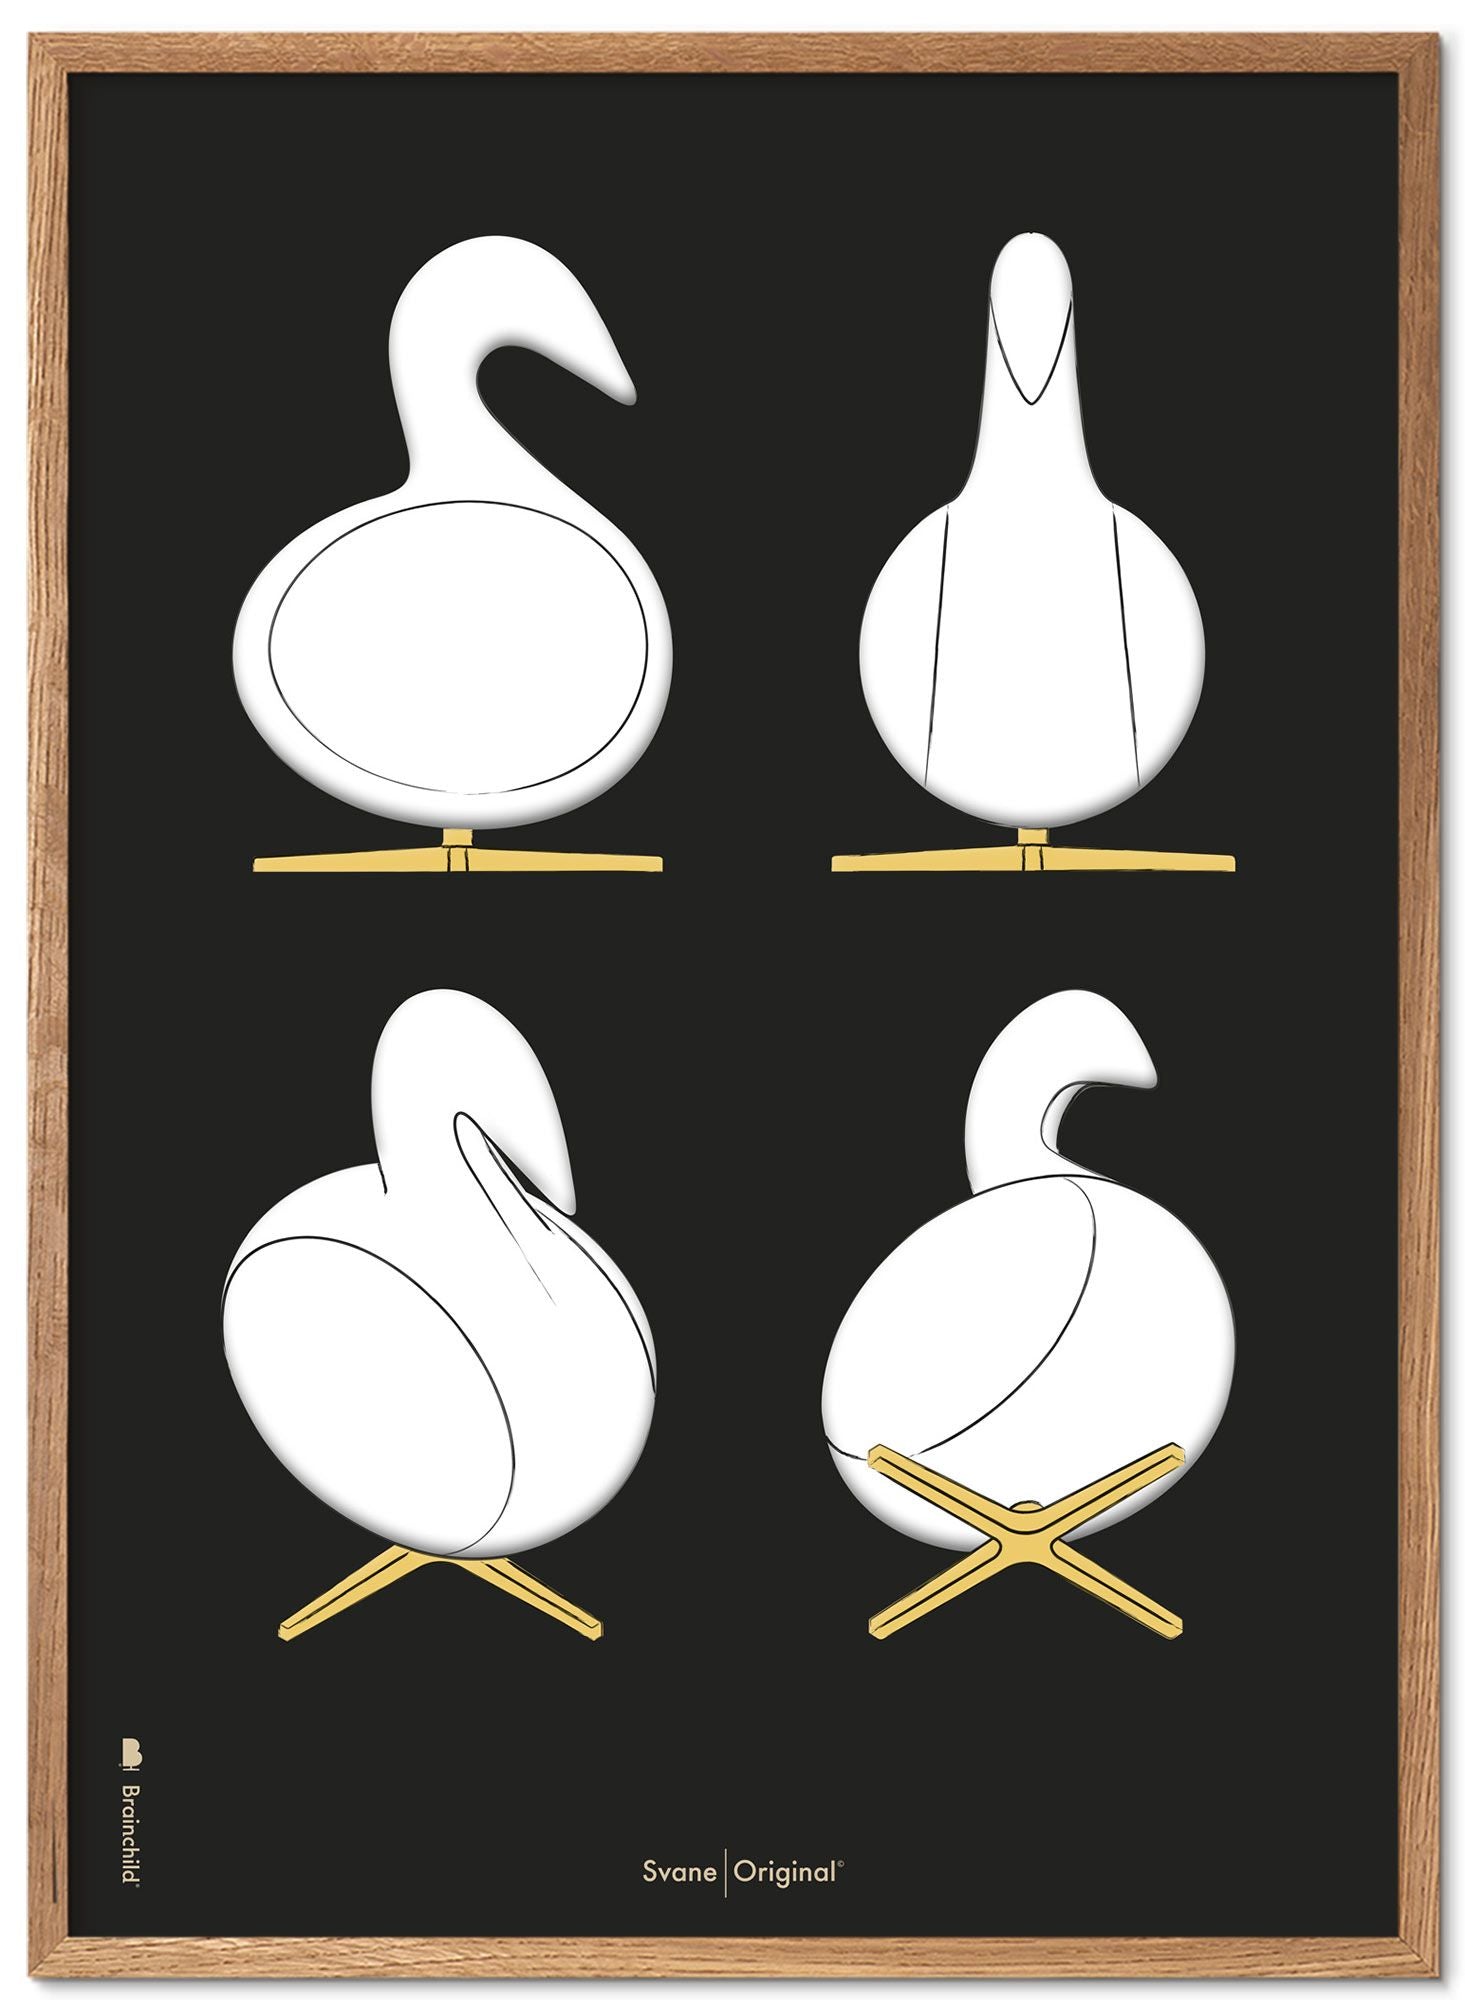 Brainchild Swan Design Schetsen Poster Frame Gemaakt Van Licht Hout 50x70 Cm, Zwarte Achtergrond